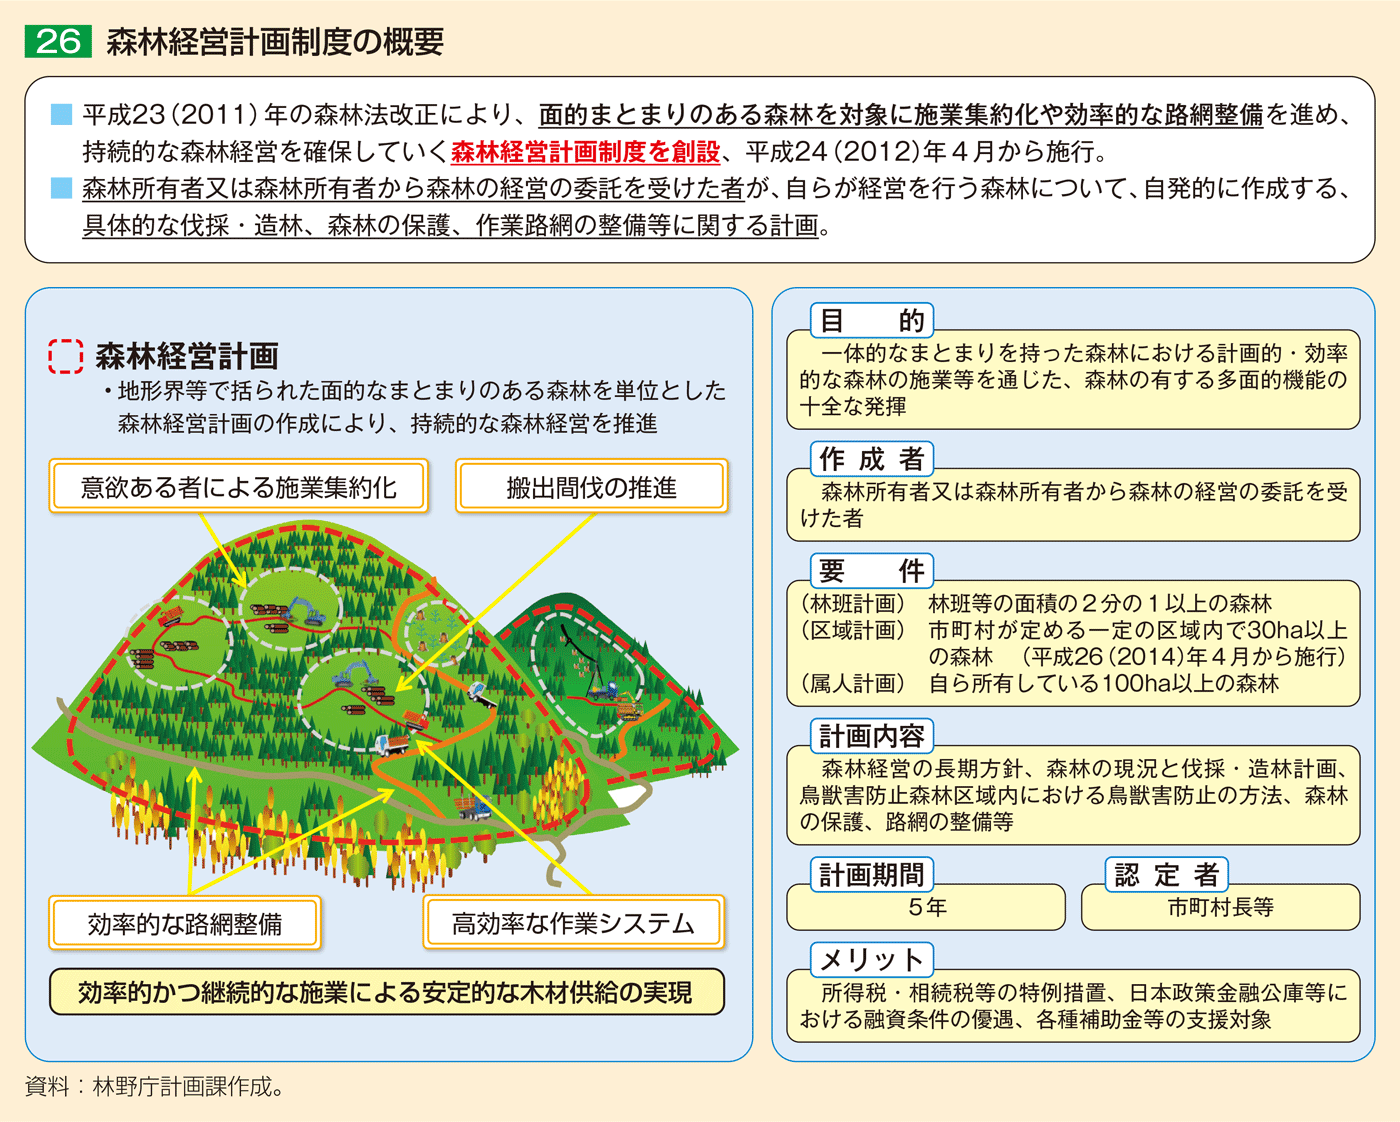 26 森林経営計画制度の概要